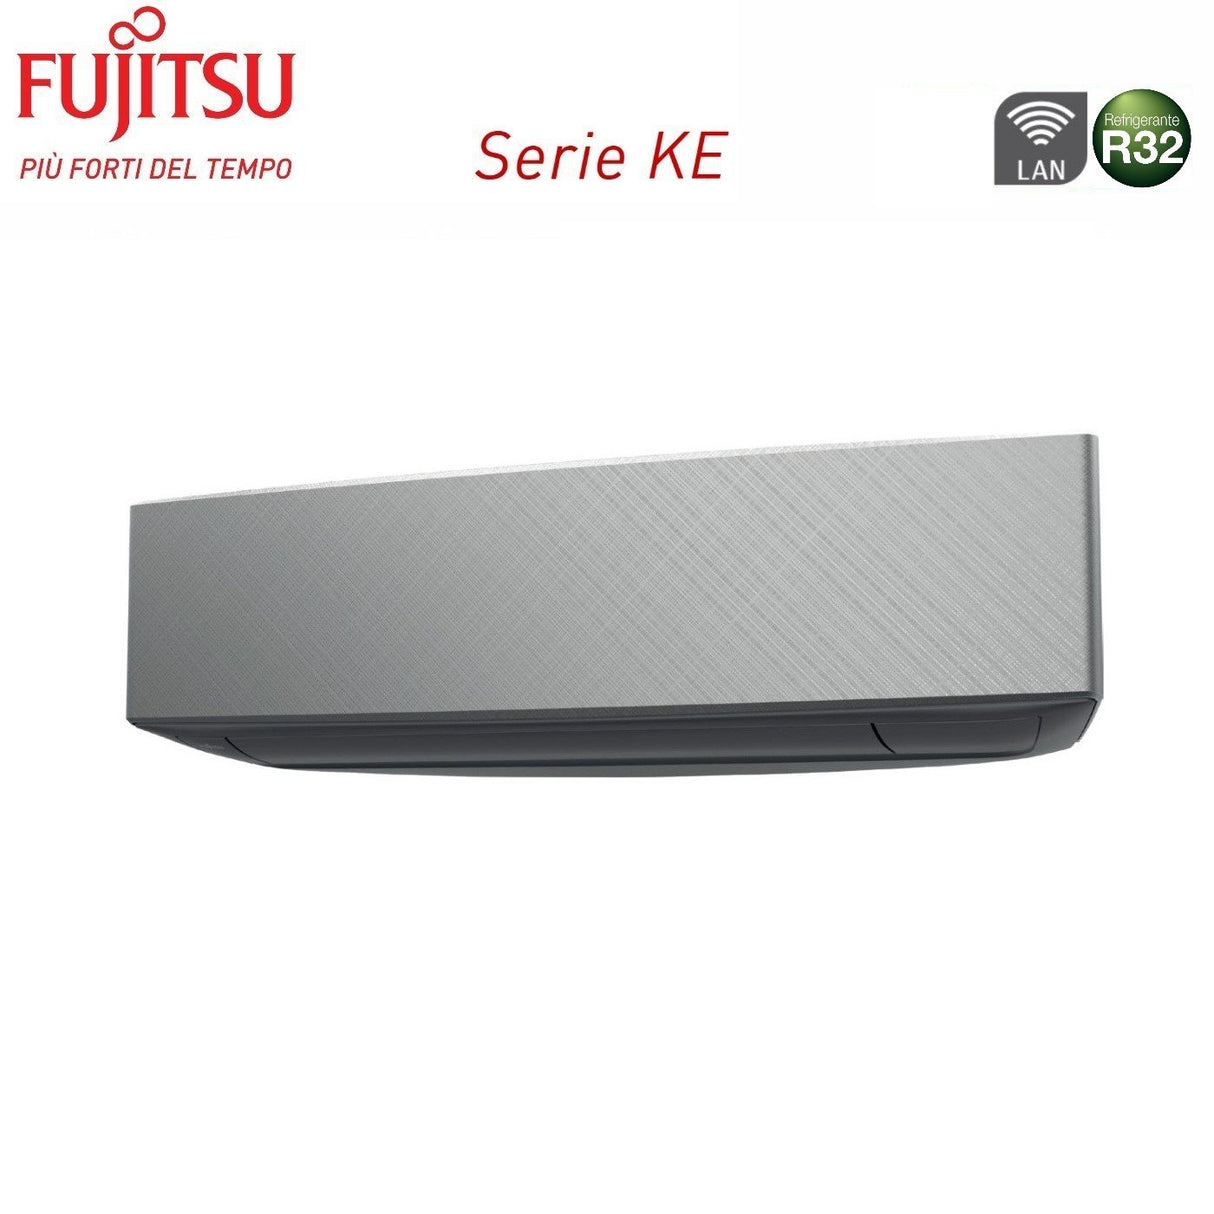 immagine-3-fujitsu-climatizzatore-condizionatore-fujitsu-quadri-split-inverter-serie-ke-silver-9121414-con-aoyg30kbta4-r-32-wi-fi-integrato-9000120001400014000-colore-bianco